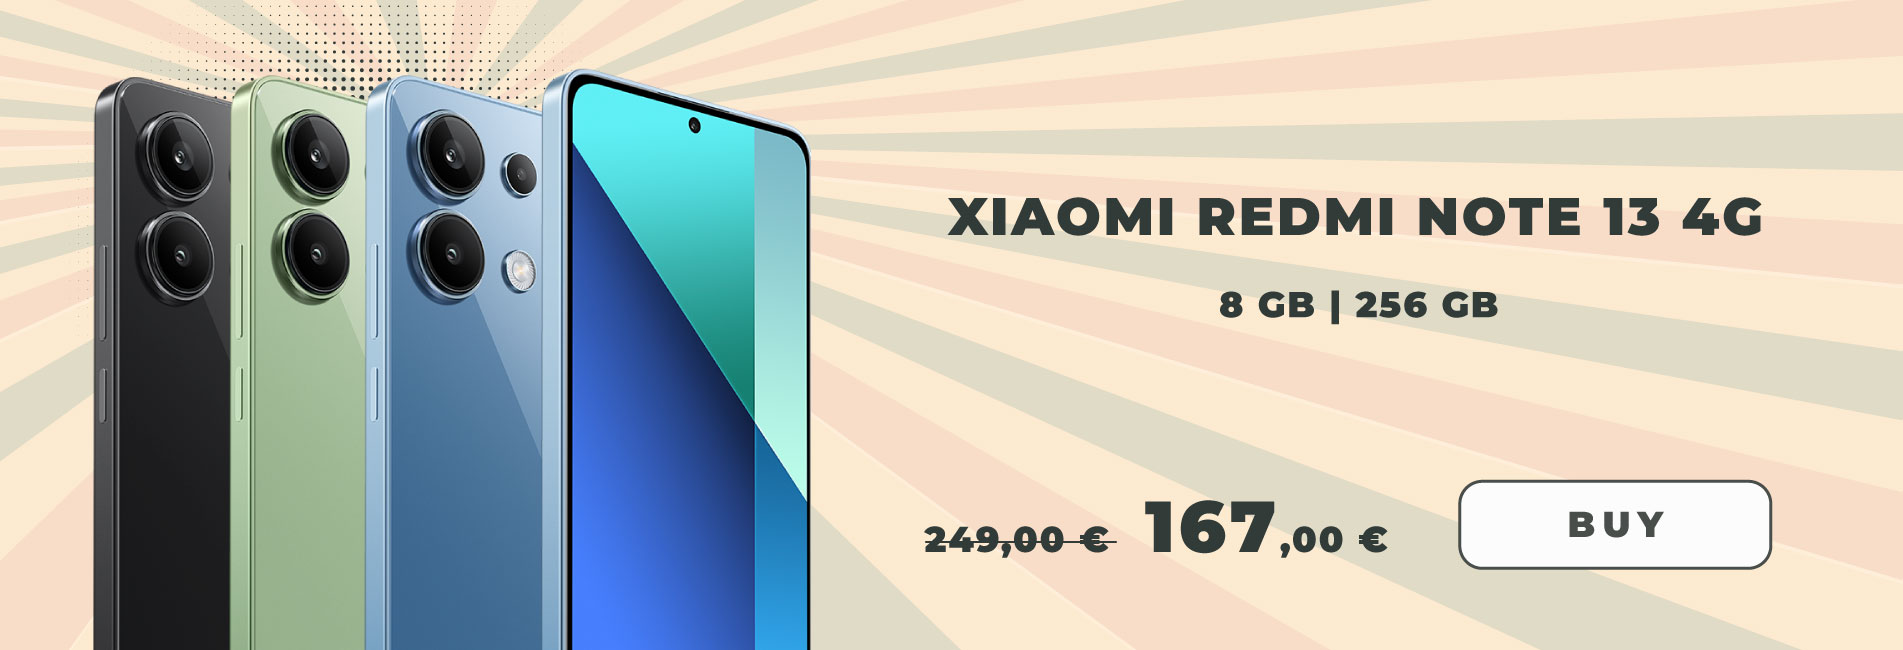 Xiaomi Redmi Note 13 4G Global Version